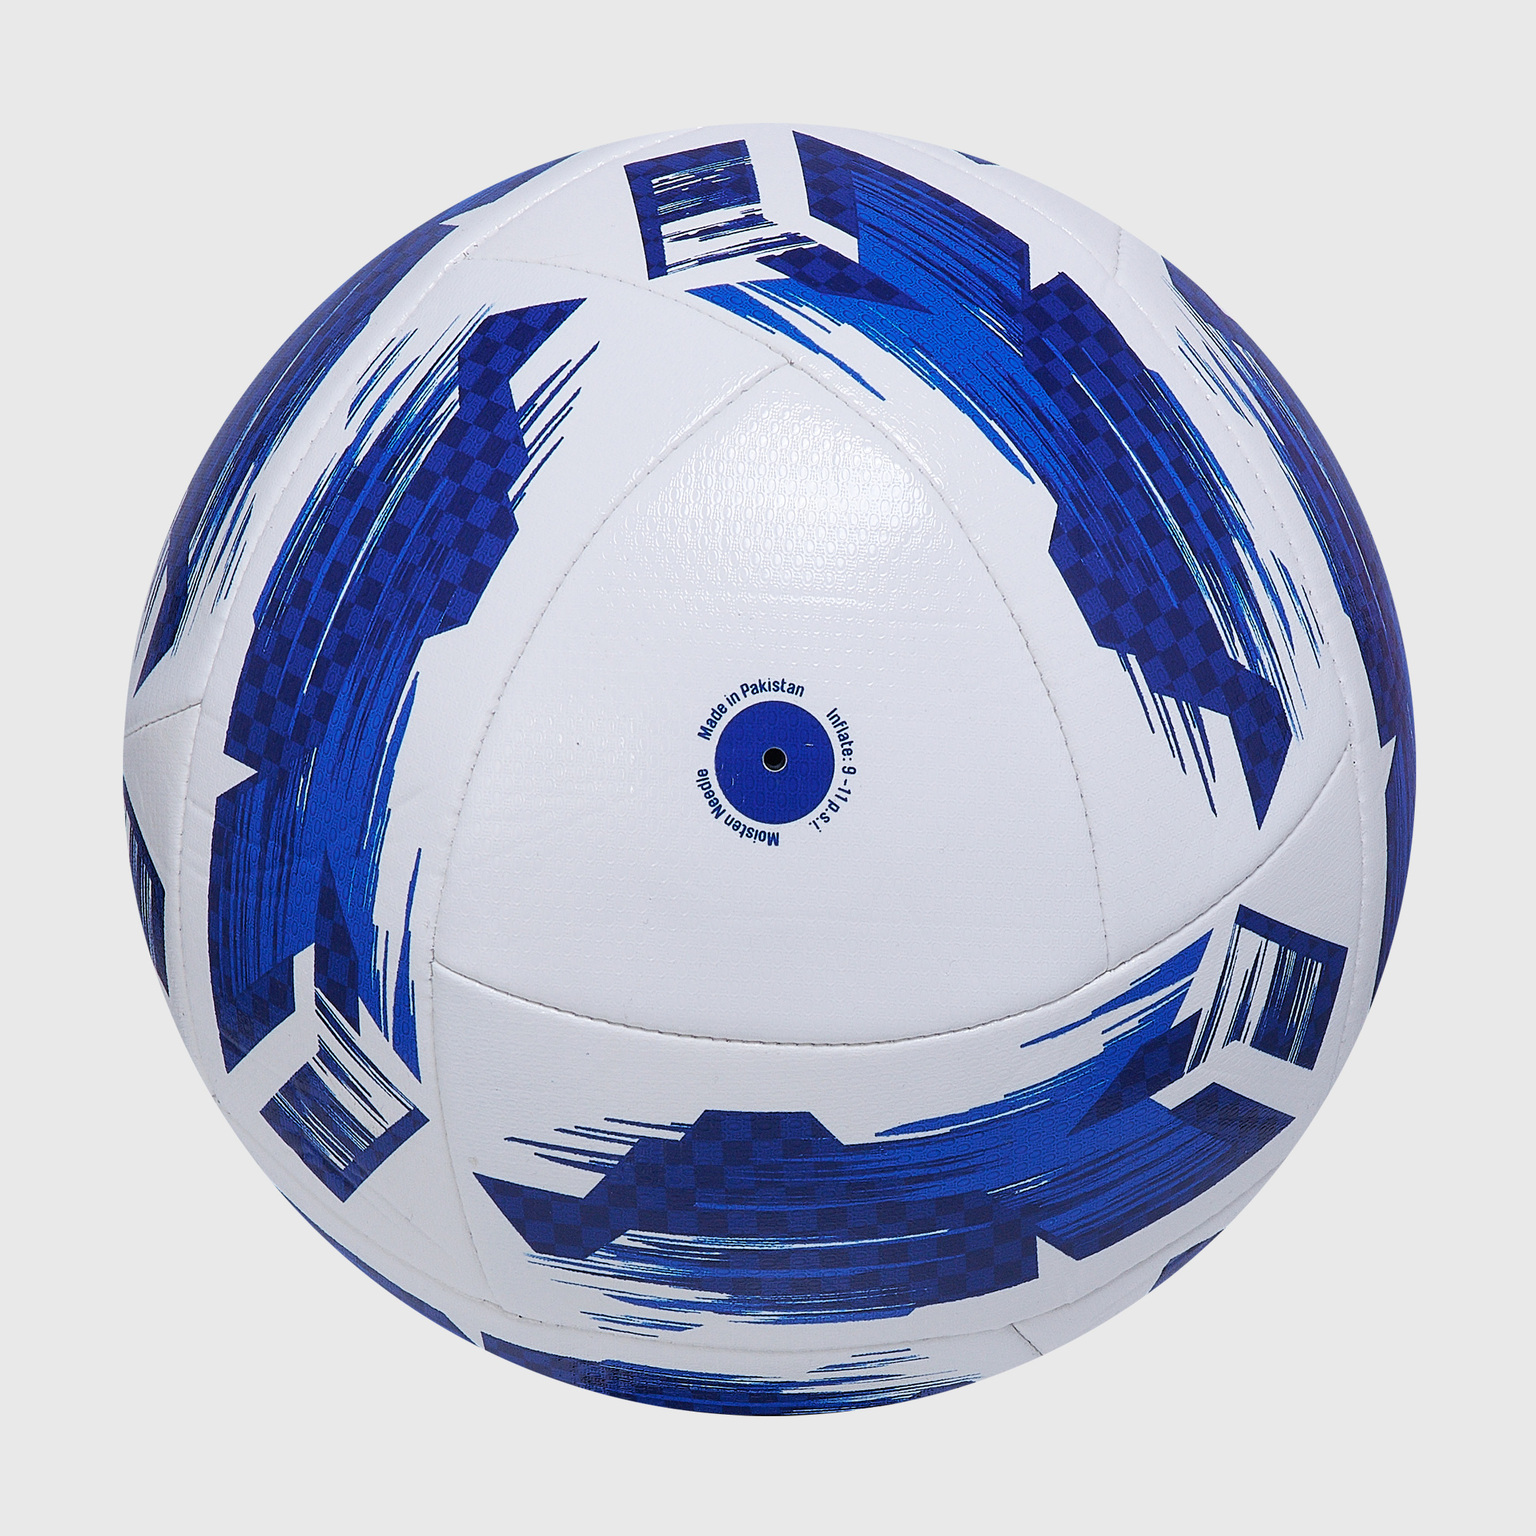 Футбольный мяч Umbro Neo Swerve 26485U-759